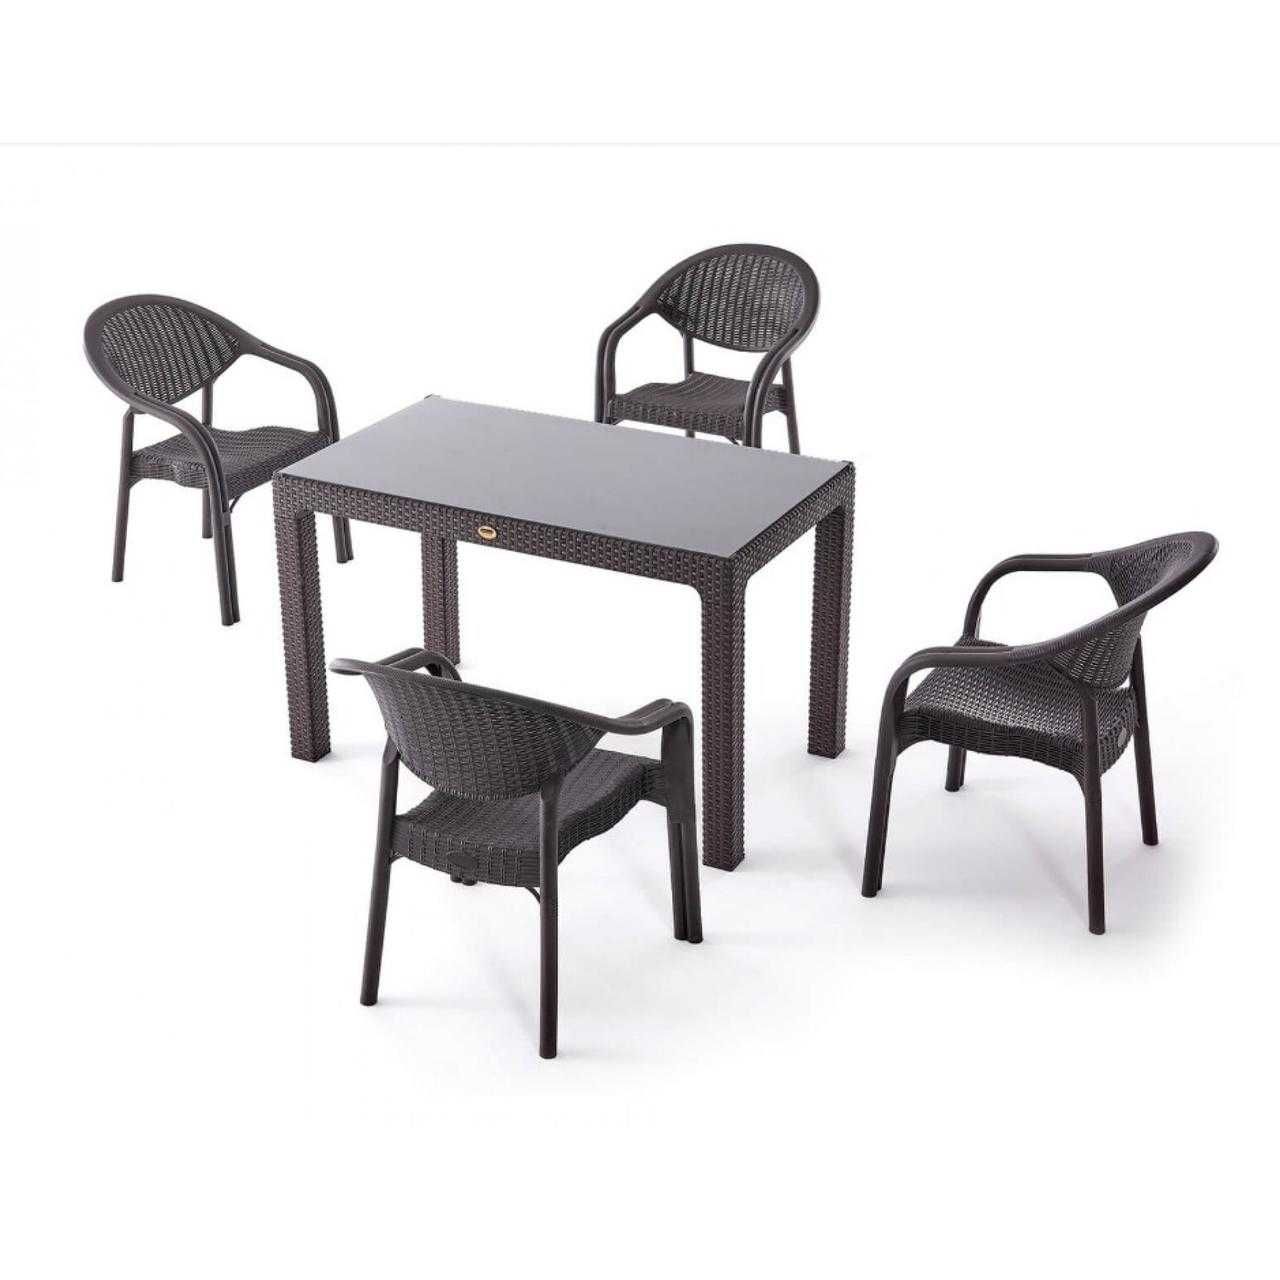 Високо качествен градински комплект от маса и 4 овални стола два цвята